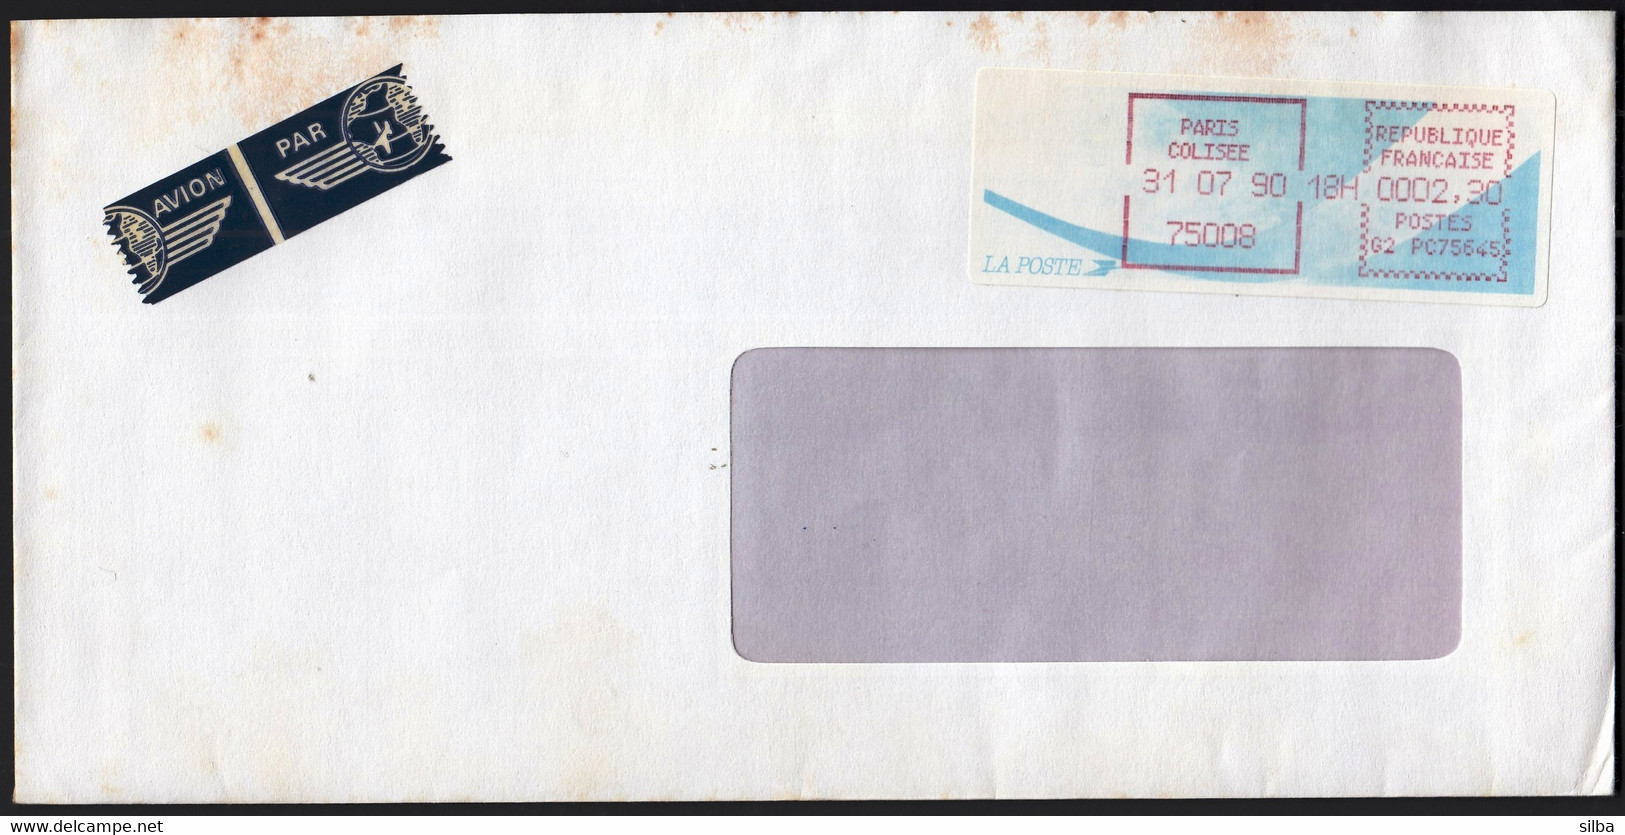 France 1990 / Paris Colisee / Franking Label / Machine Stamp, Automat / Franking Label - 1990 Type « Oiseaux De Jubert »